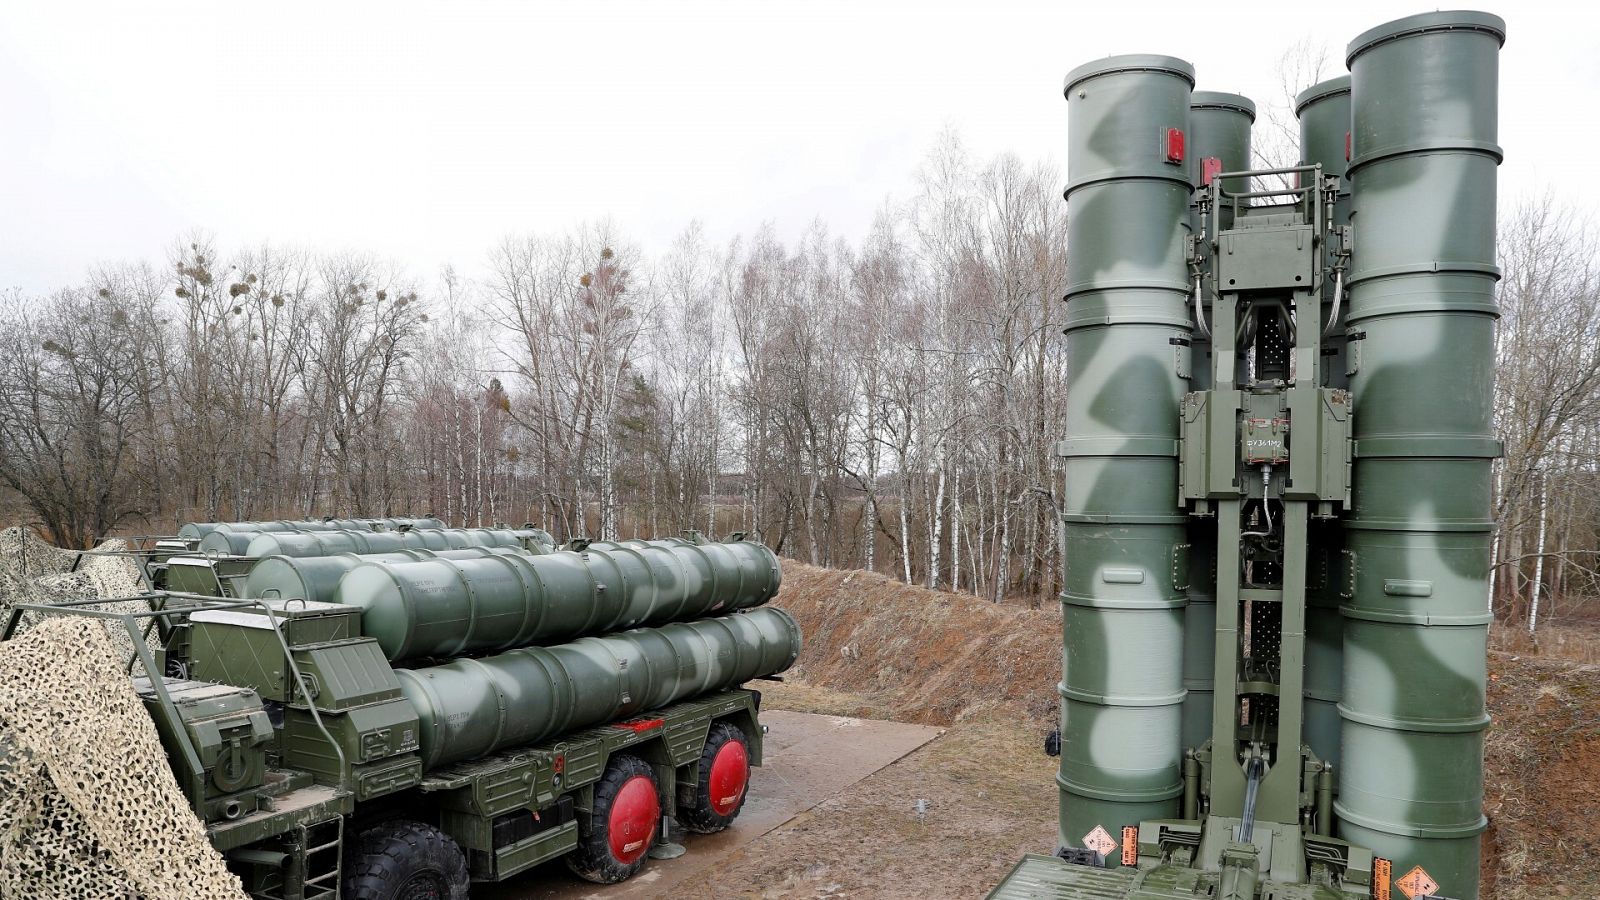 Vista de unos misiles tierra aire que se emplean en la guerra de Ucrania y Rusia